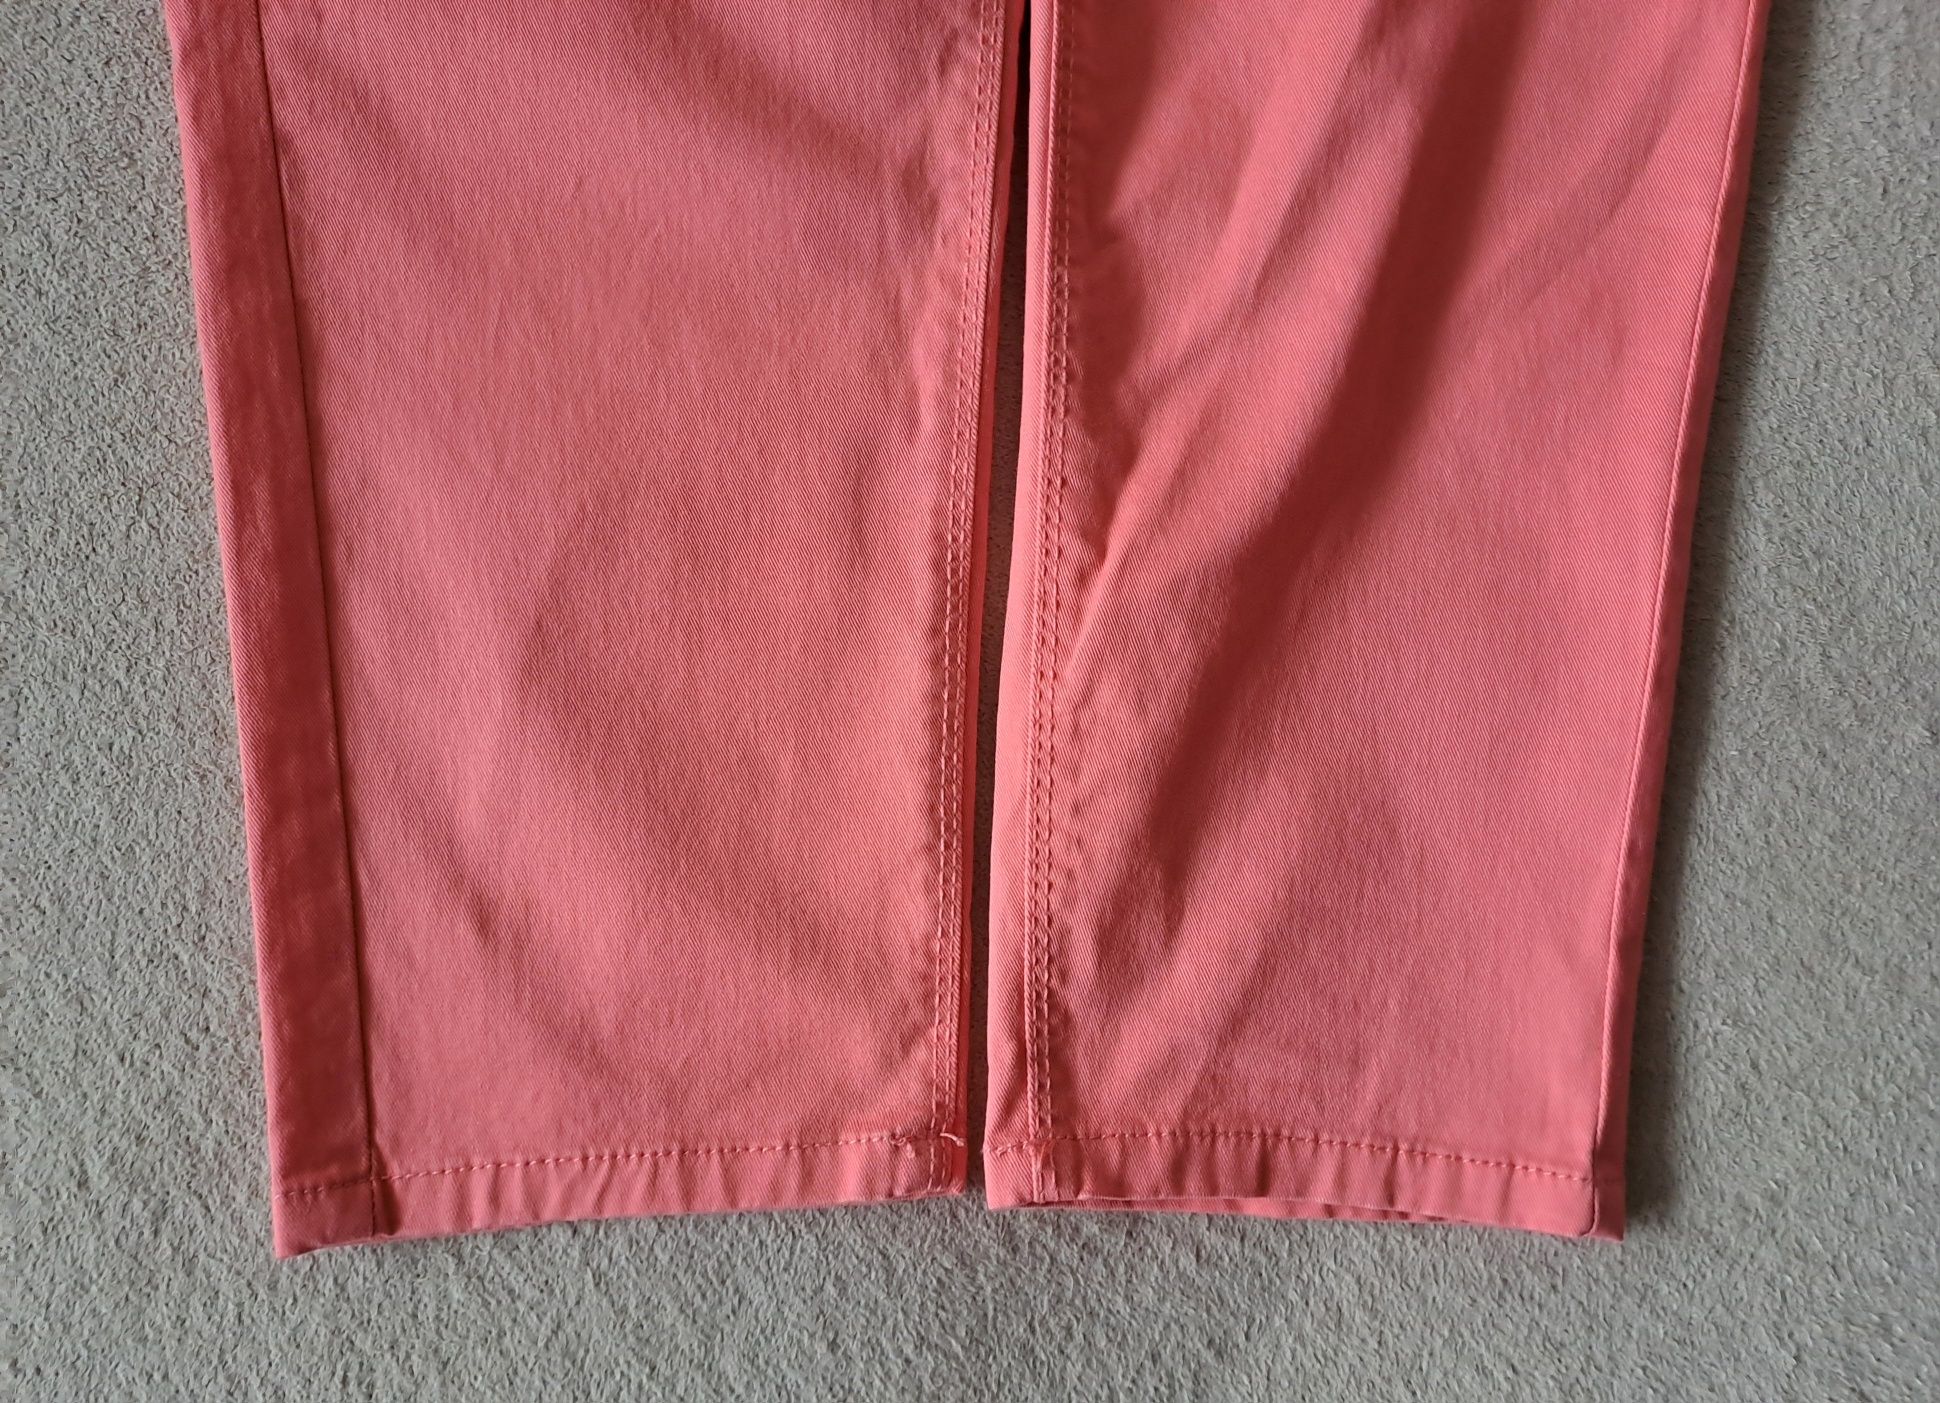 NOWE spodnie UP2FASHION roz. 44 styl klasyka moda komfort